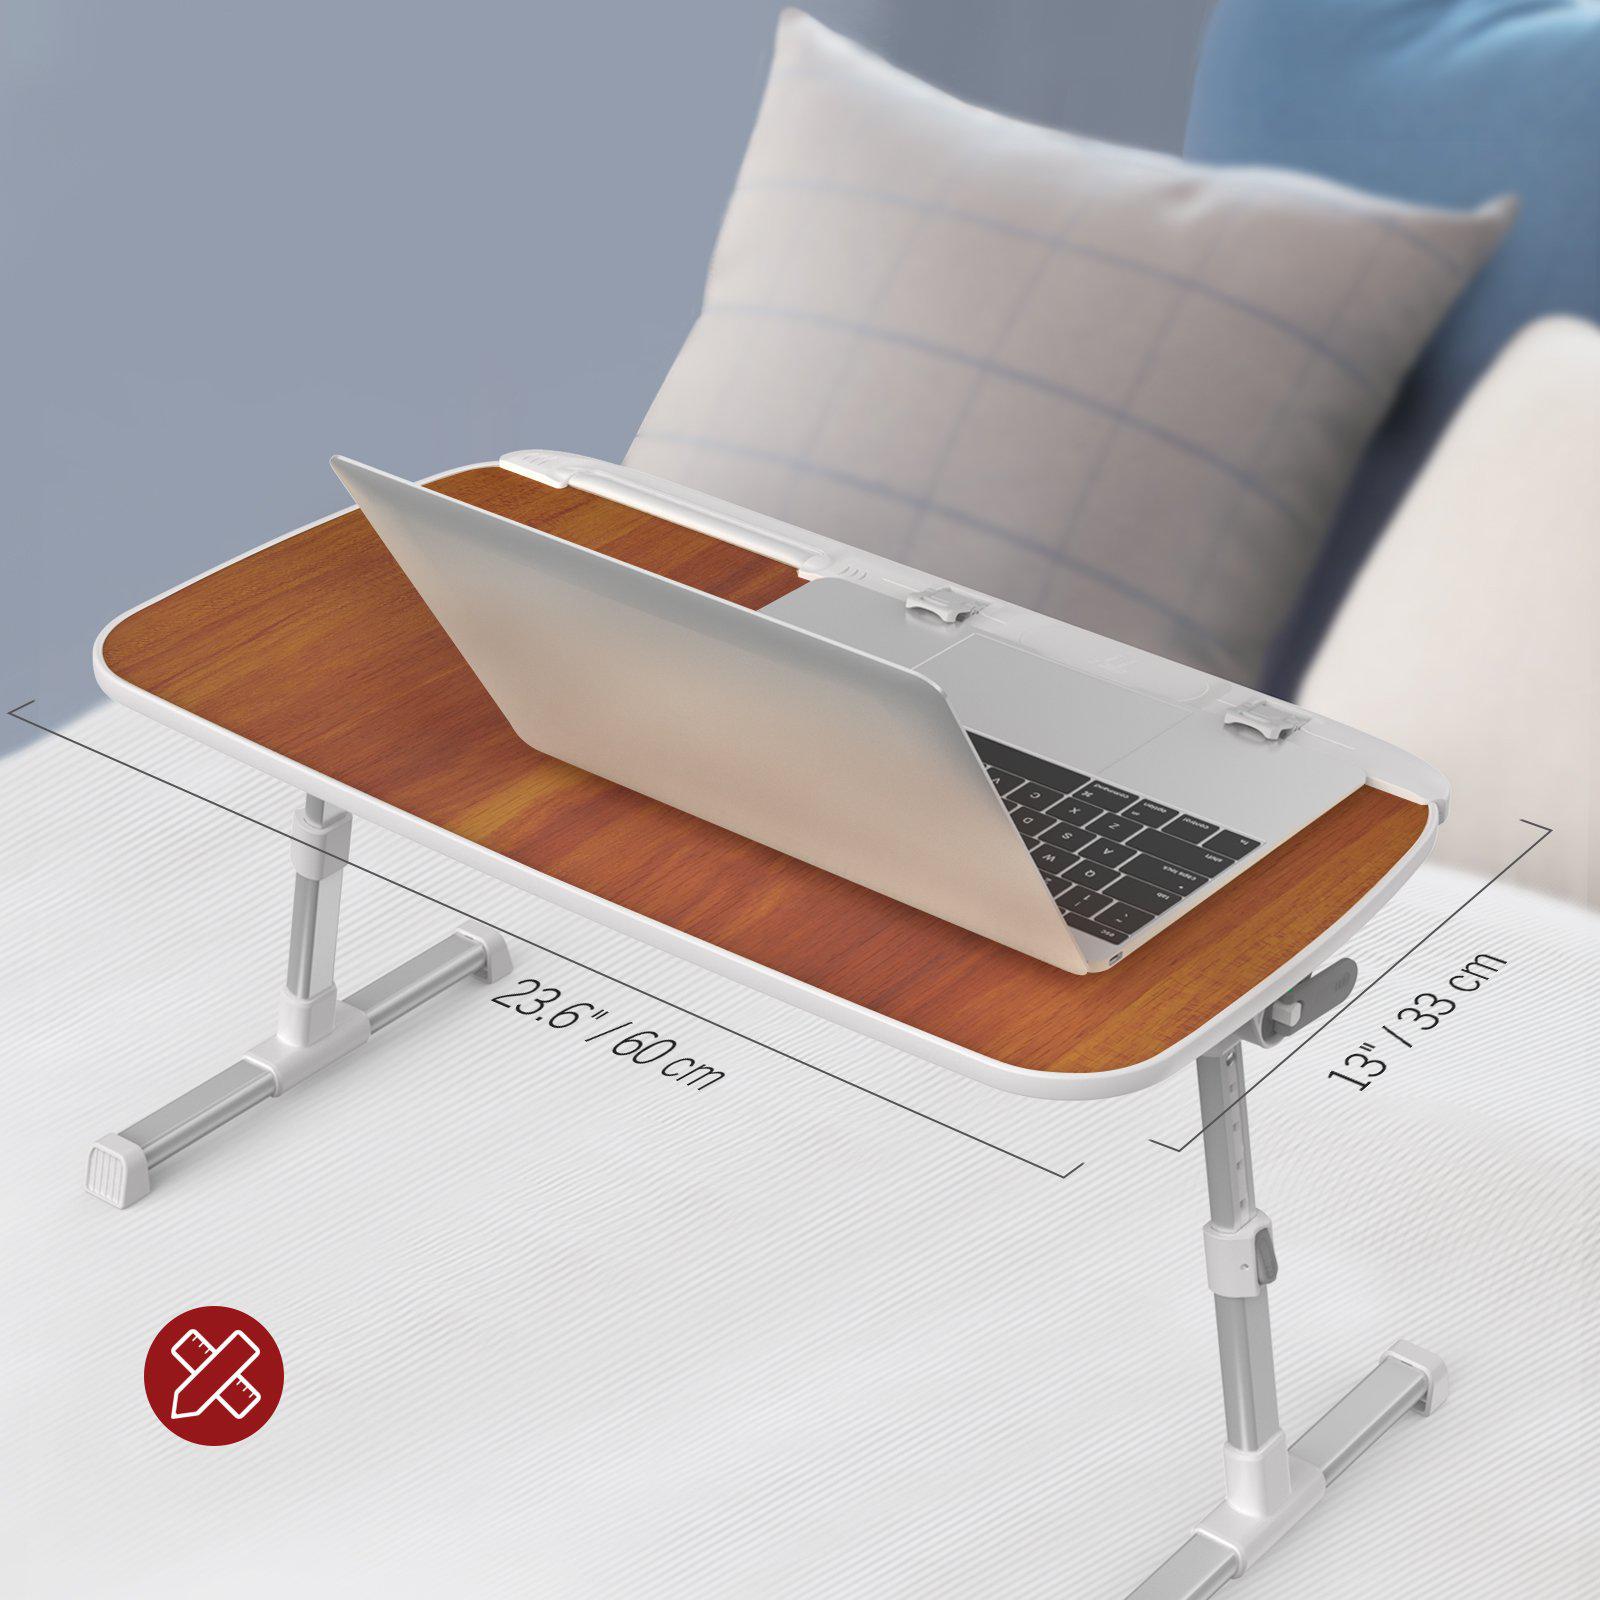 Laptop Desk for Bed 03-TaoTronics